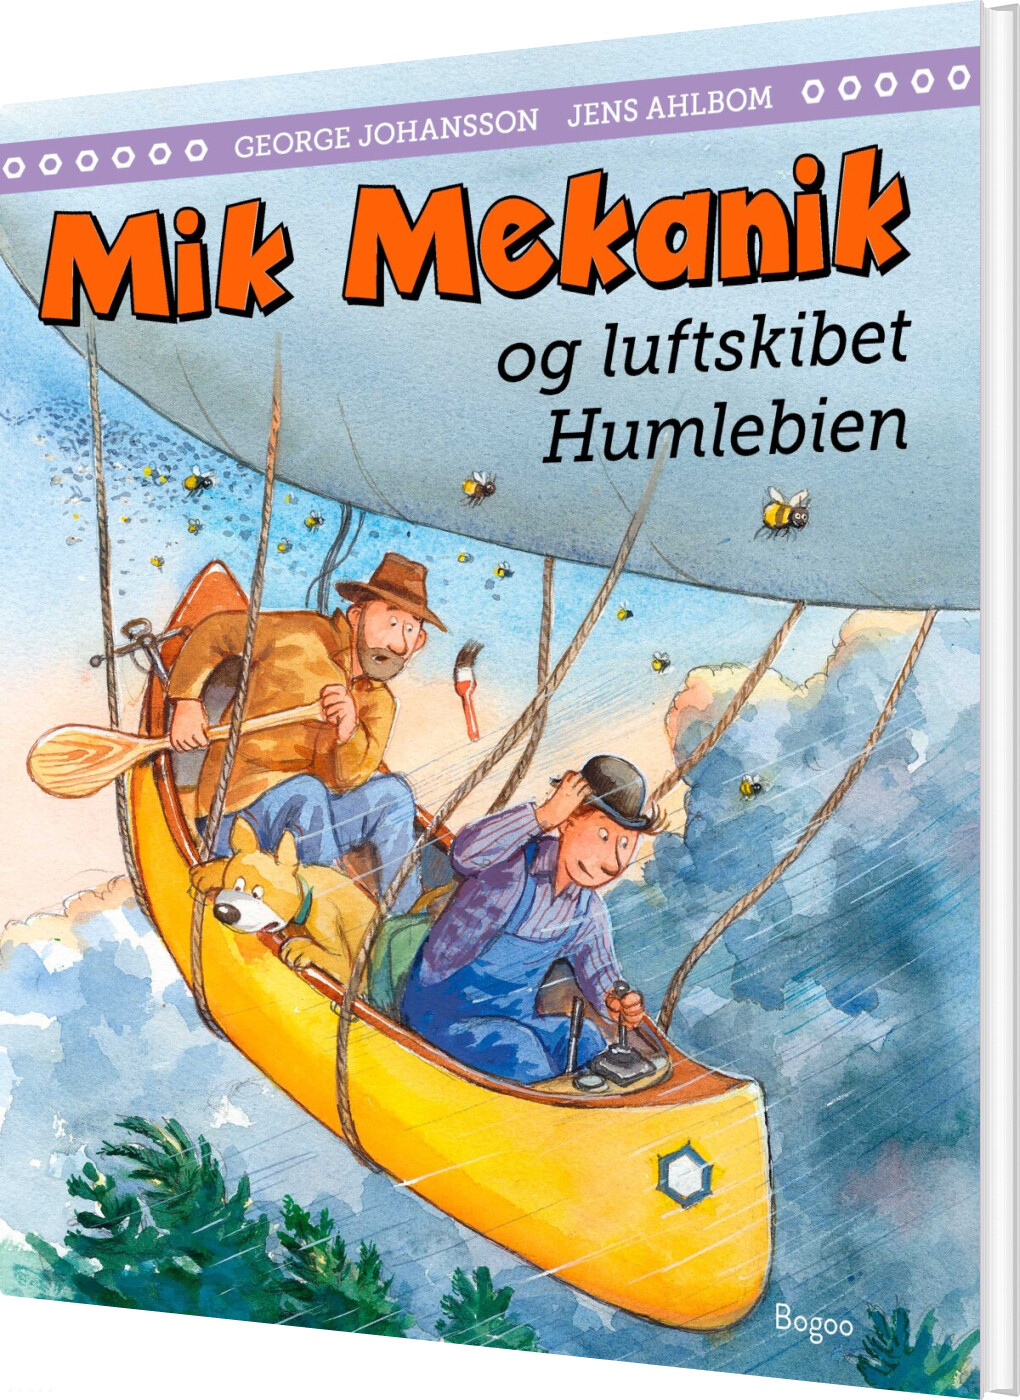 Billede af Mik Mekanik Og Luftskibet Humlebien - George Johansson - Bog hos Gucca.dk